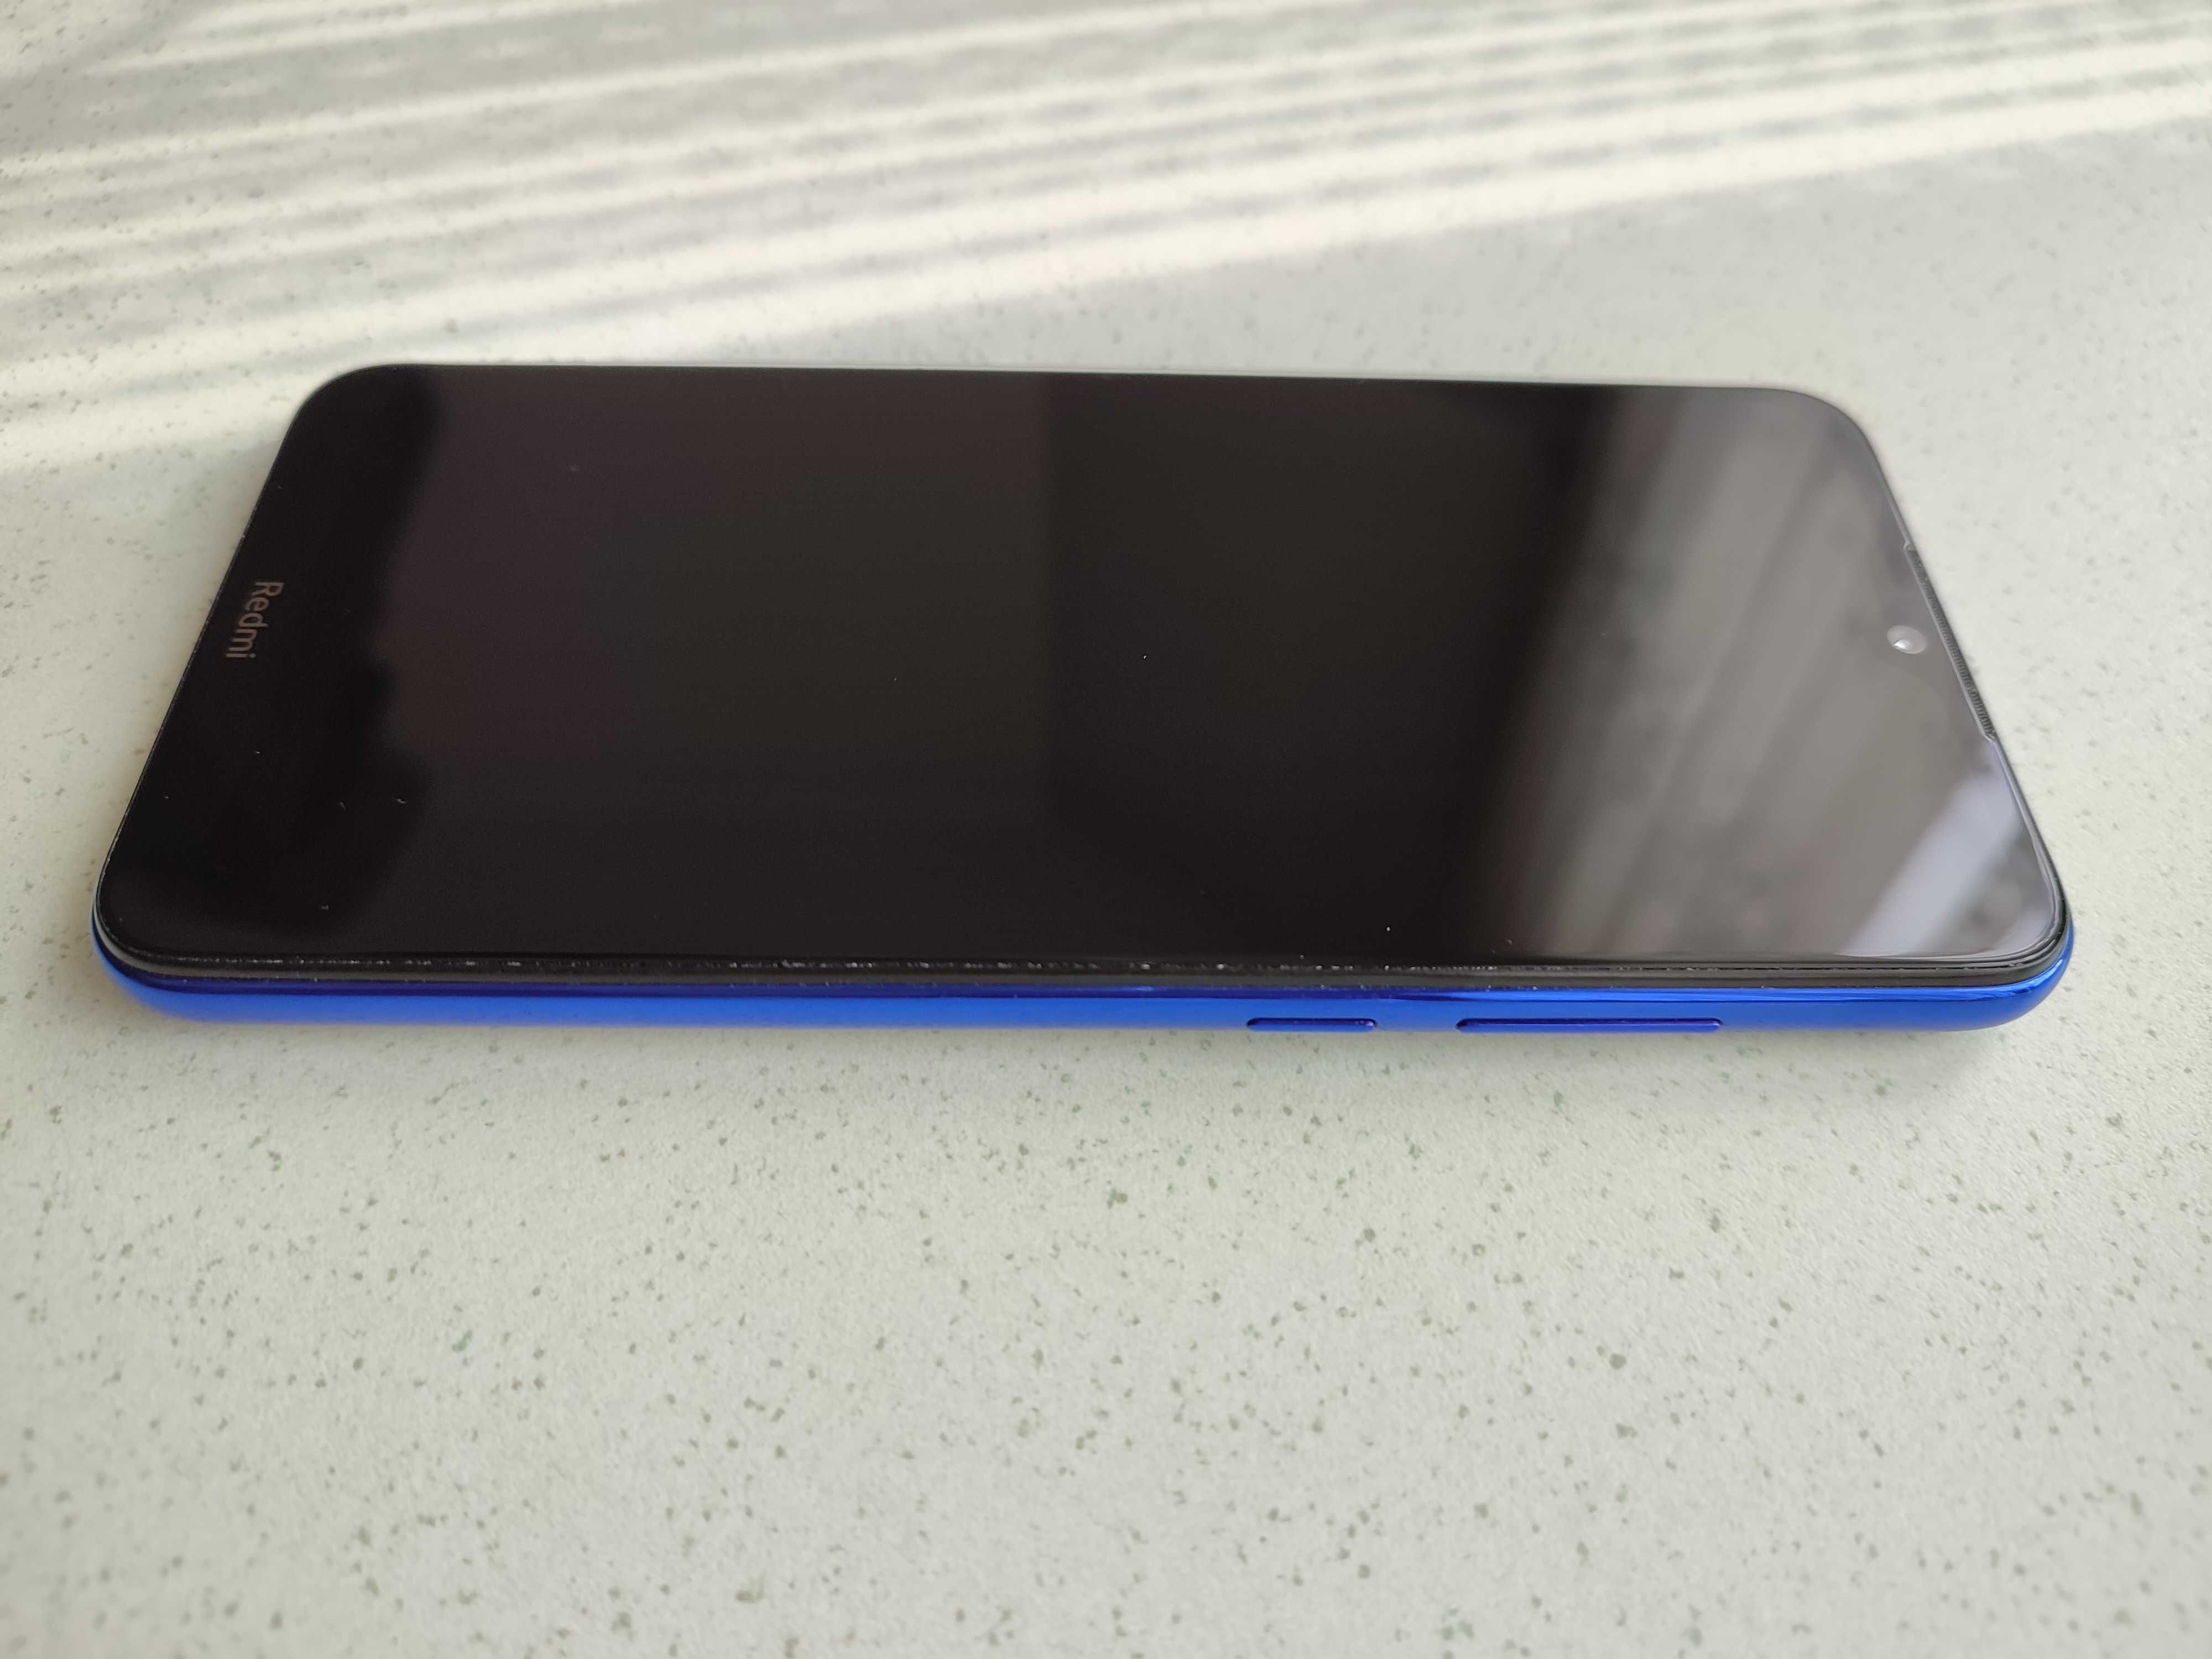 Smartfon Xiaomi Redmi Note 8T 4 GB / 64 GB 4G (LTE) niebieski